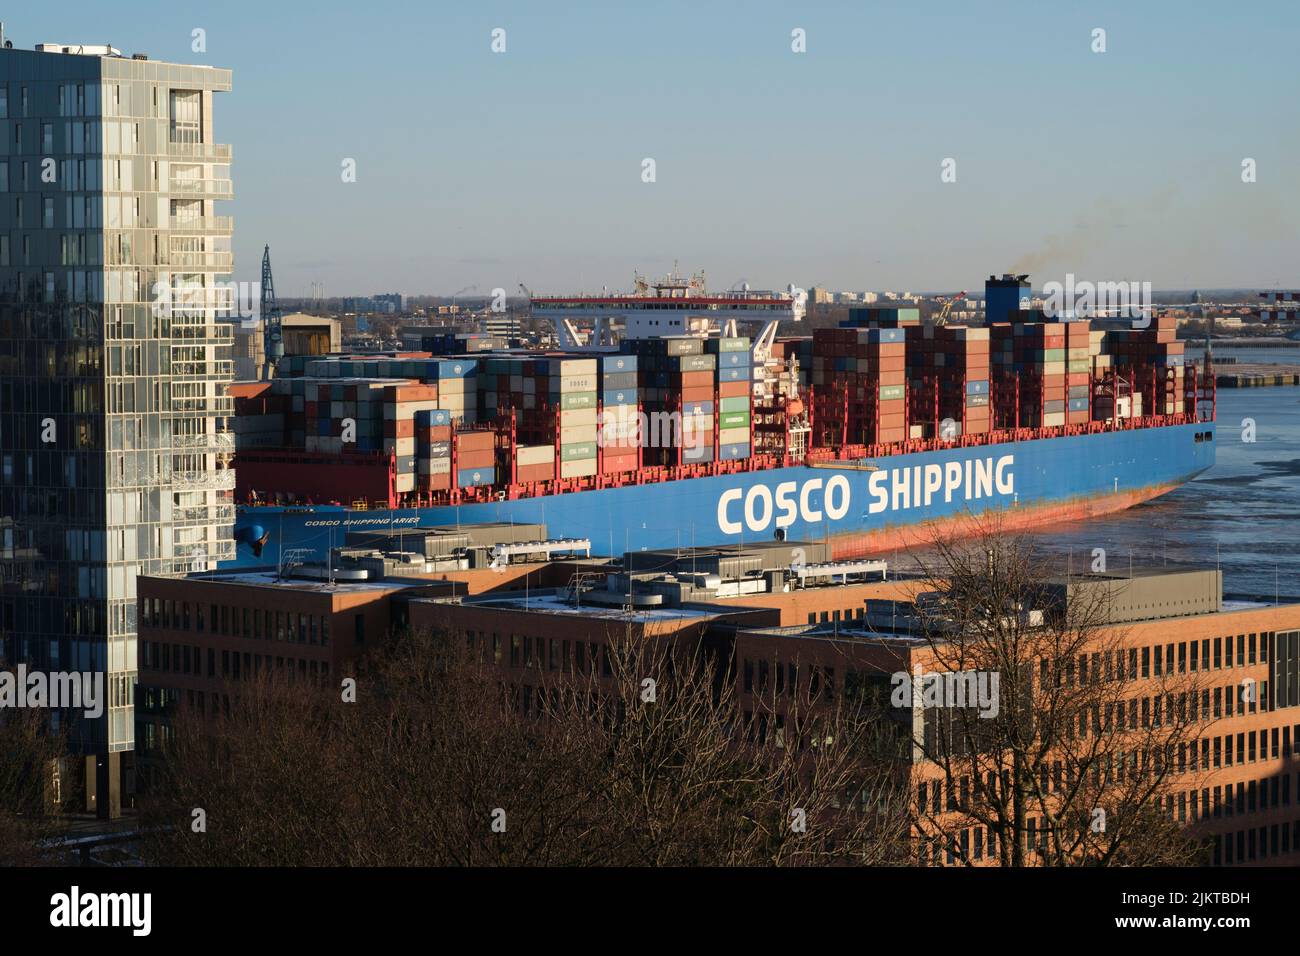 A Cosco Shipping boat in Hamburg Harbor, Germany Stock Photo